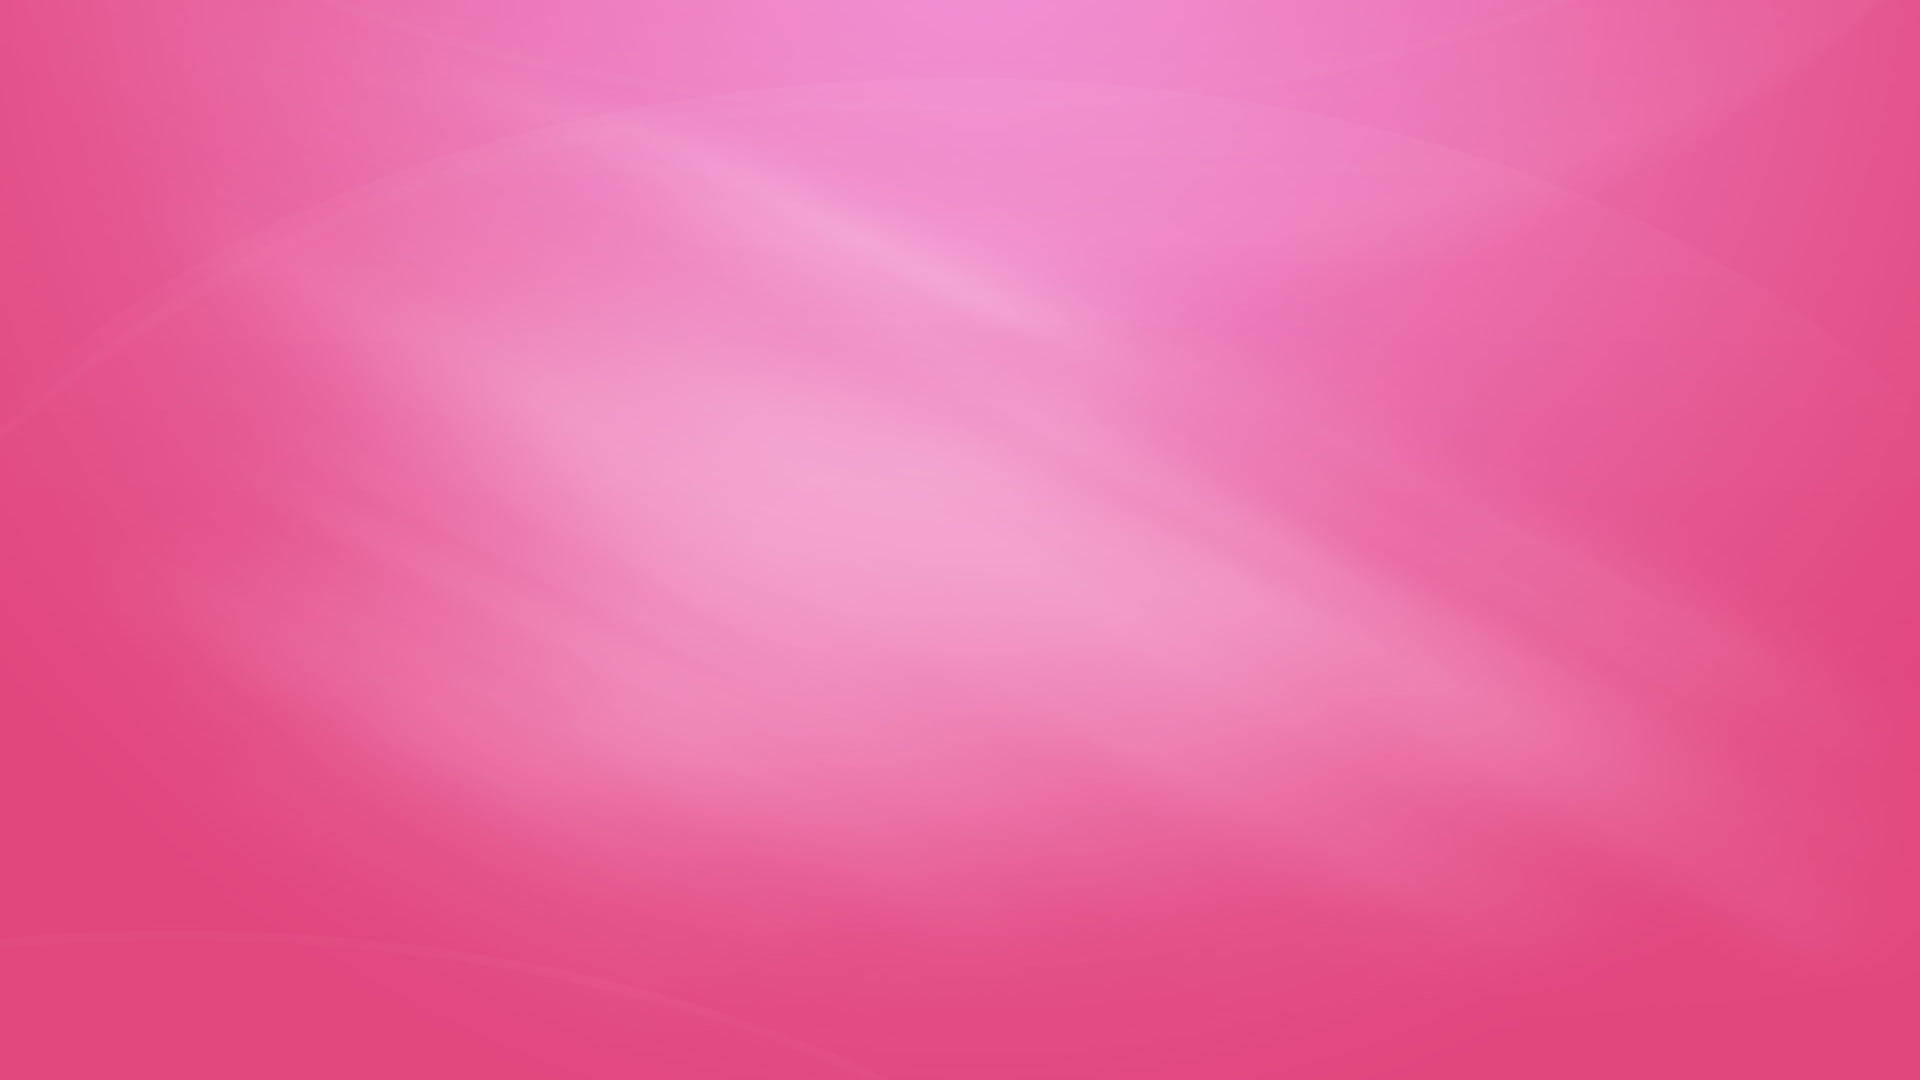 Pink Textured Presentation Background